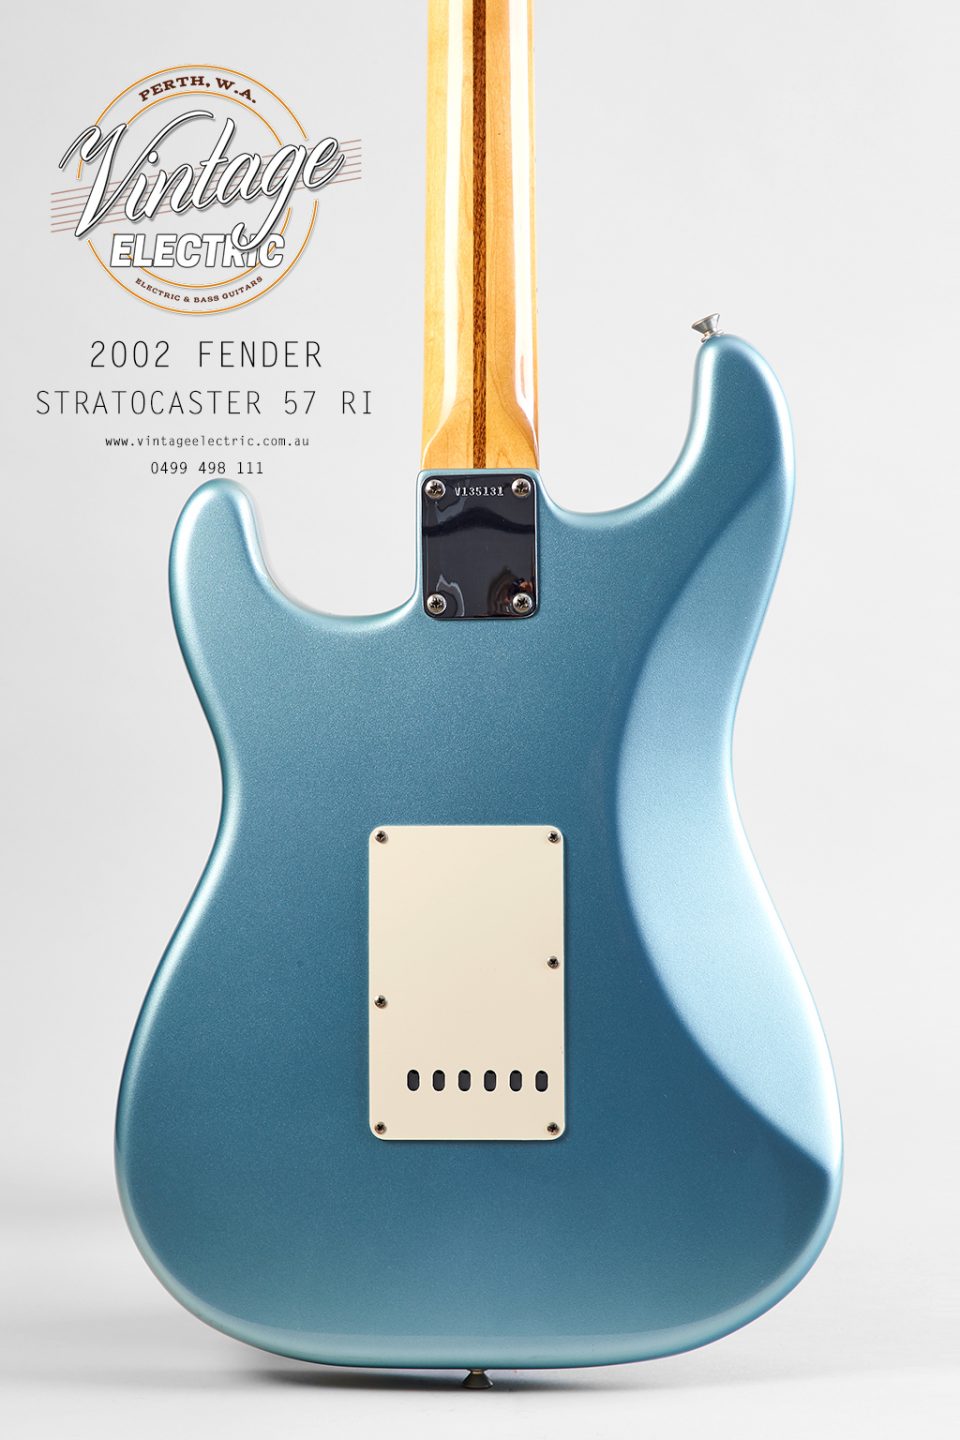 2002 Fender Stratocaster Back of Body